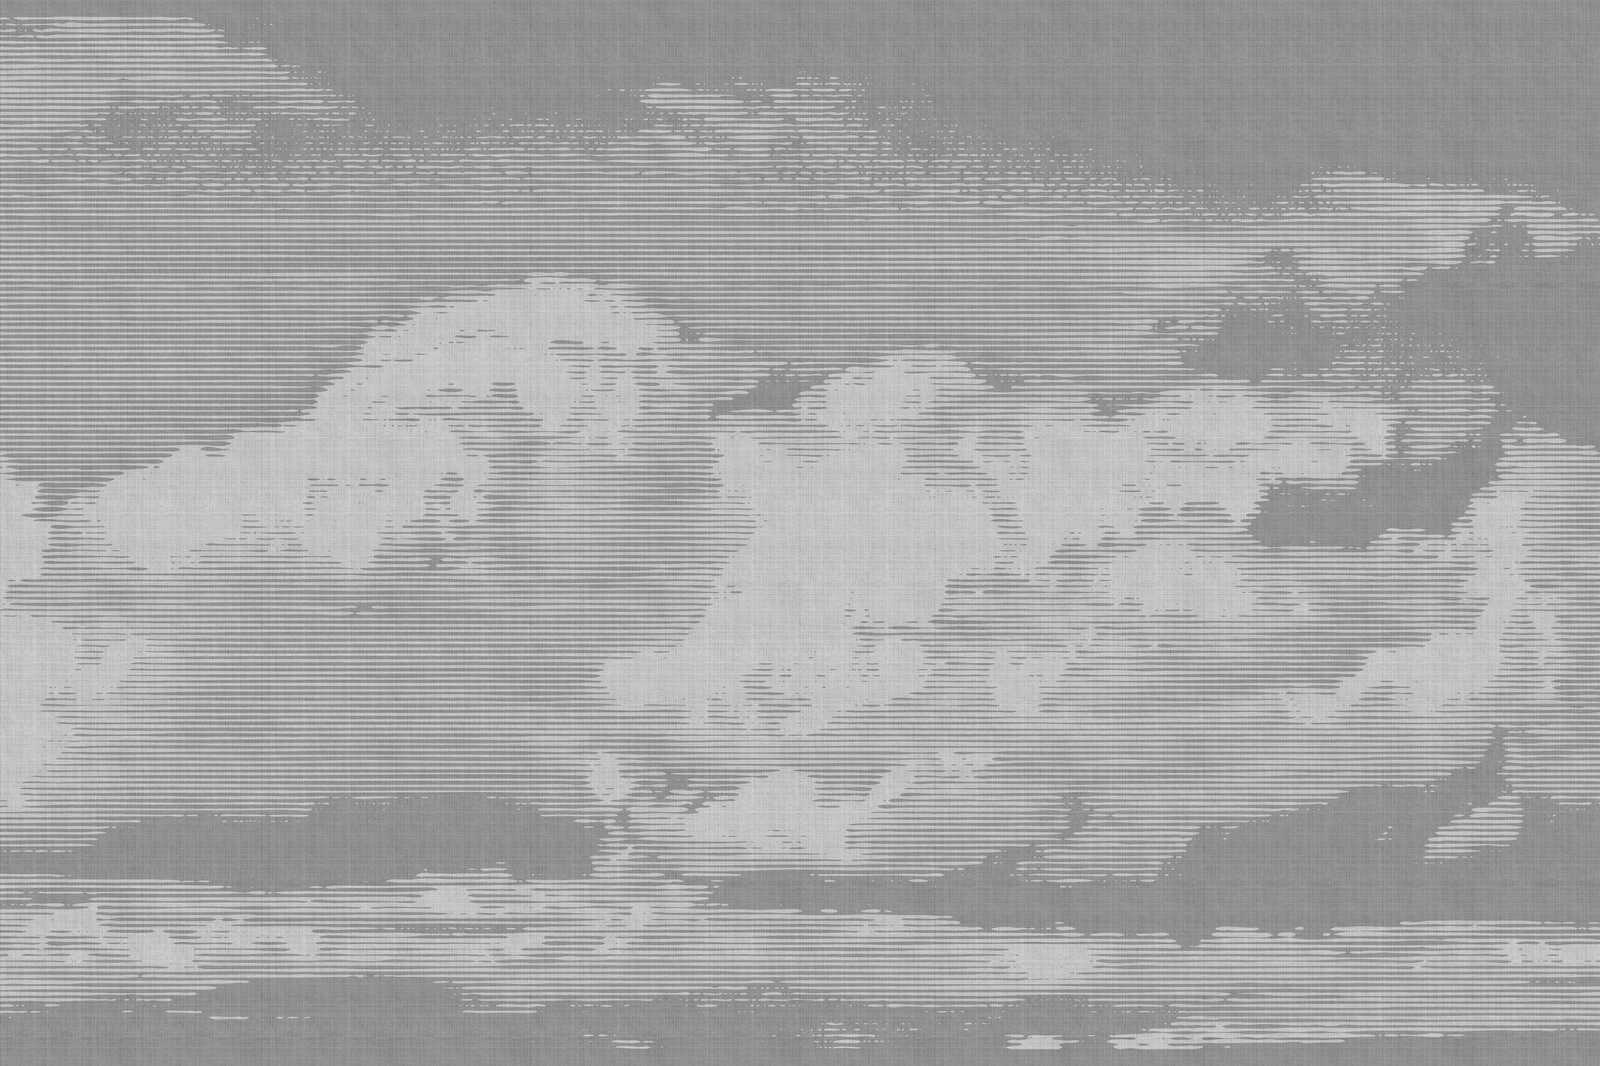             Clouds 2 - Himmlisches Leinwandbild in naturleinen Optik mit Wolkenmotiv – 1,20 m x 0,80 m
        